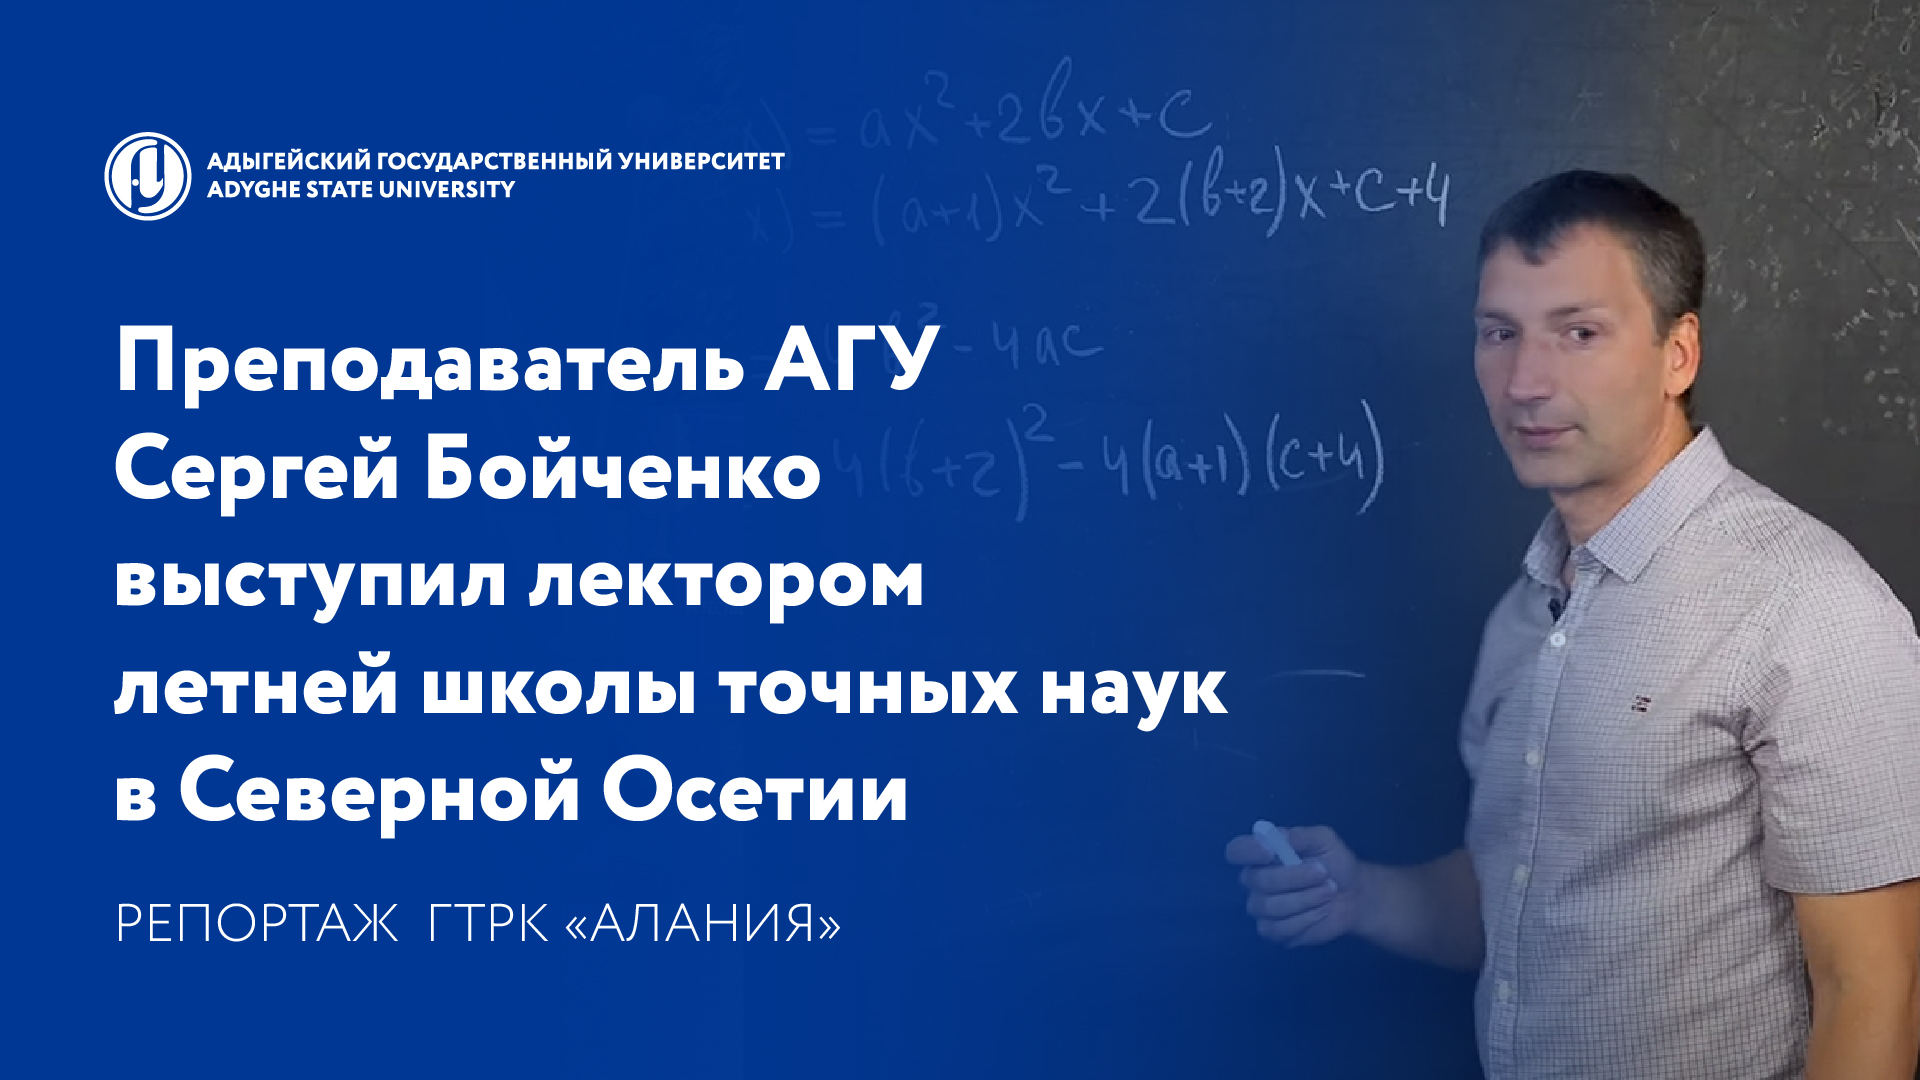 Преподаватель АГУ выступил лектором летней школы точных наук в Северной Осетии